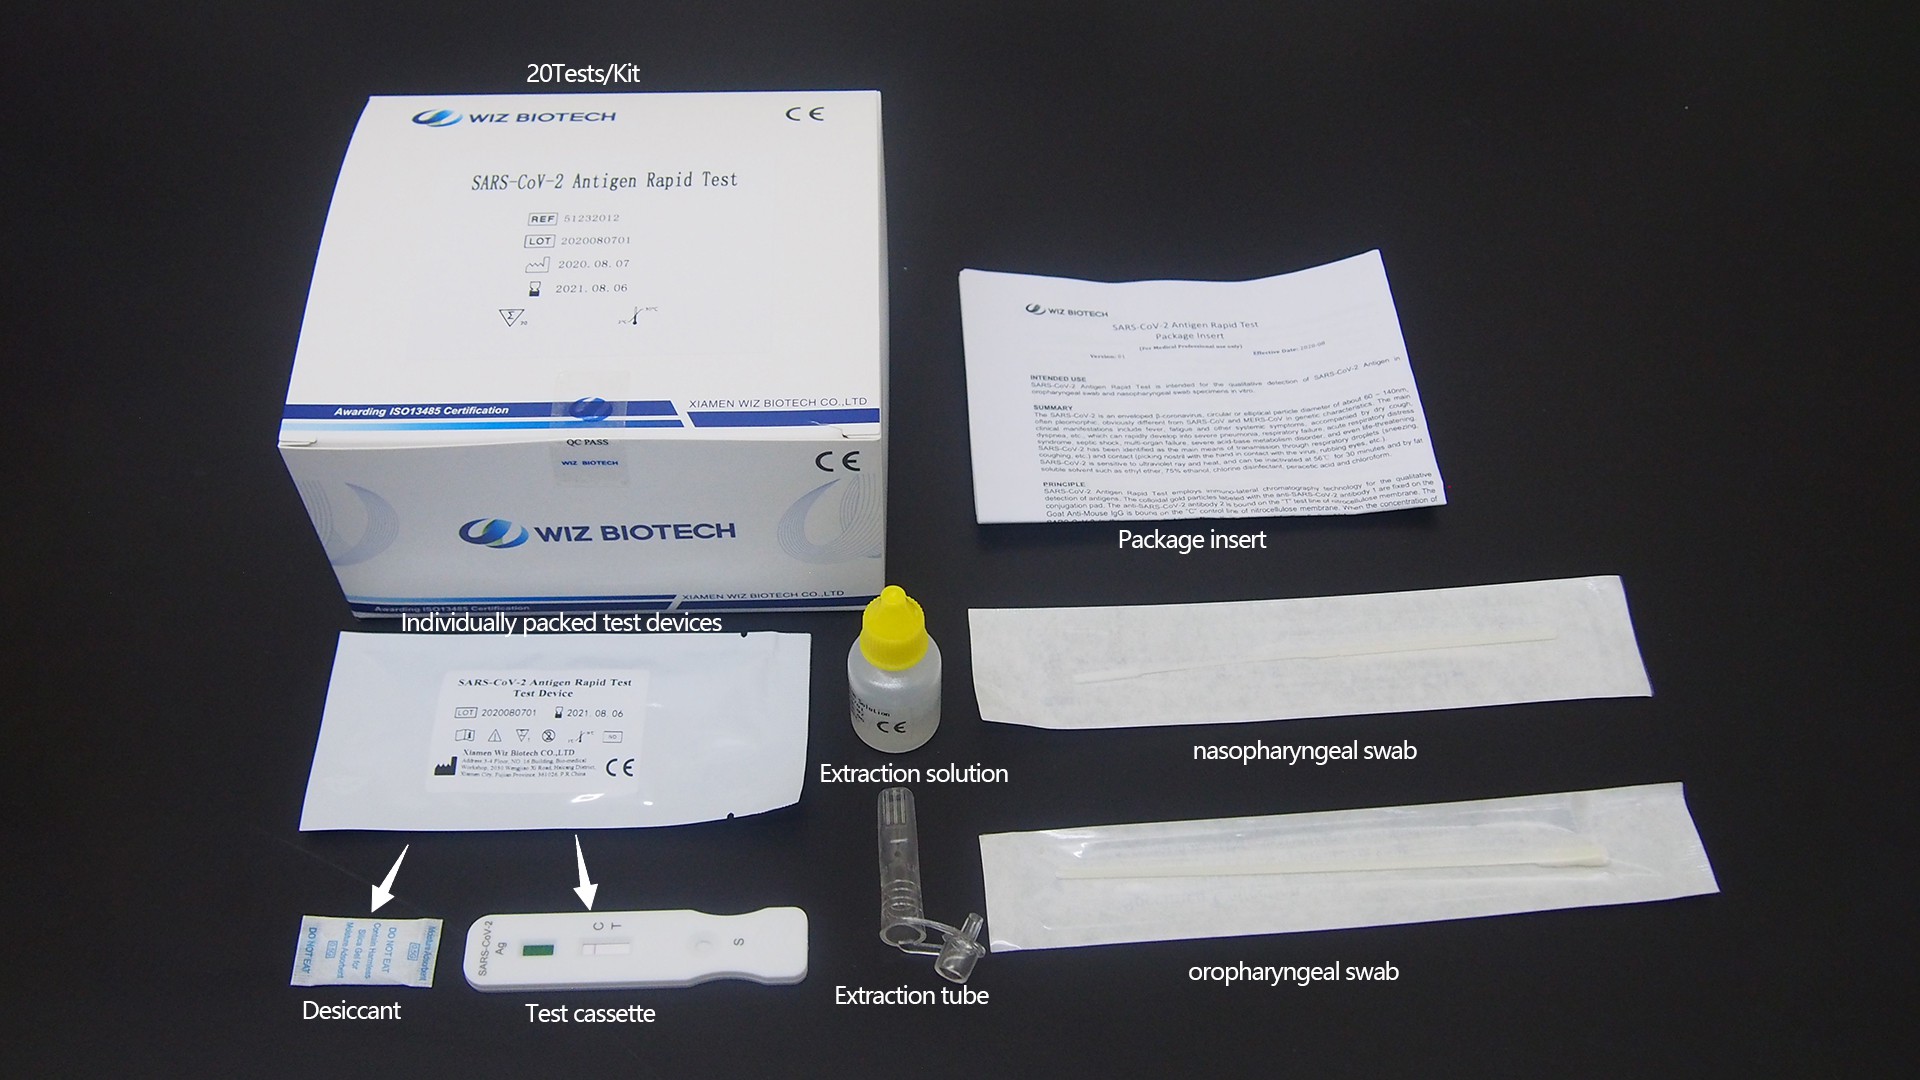 PEI Lista de evaluación de pruebas de sensibilidad al sars-cov-2